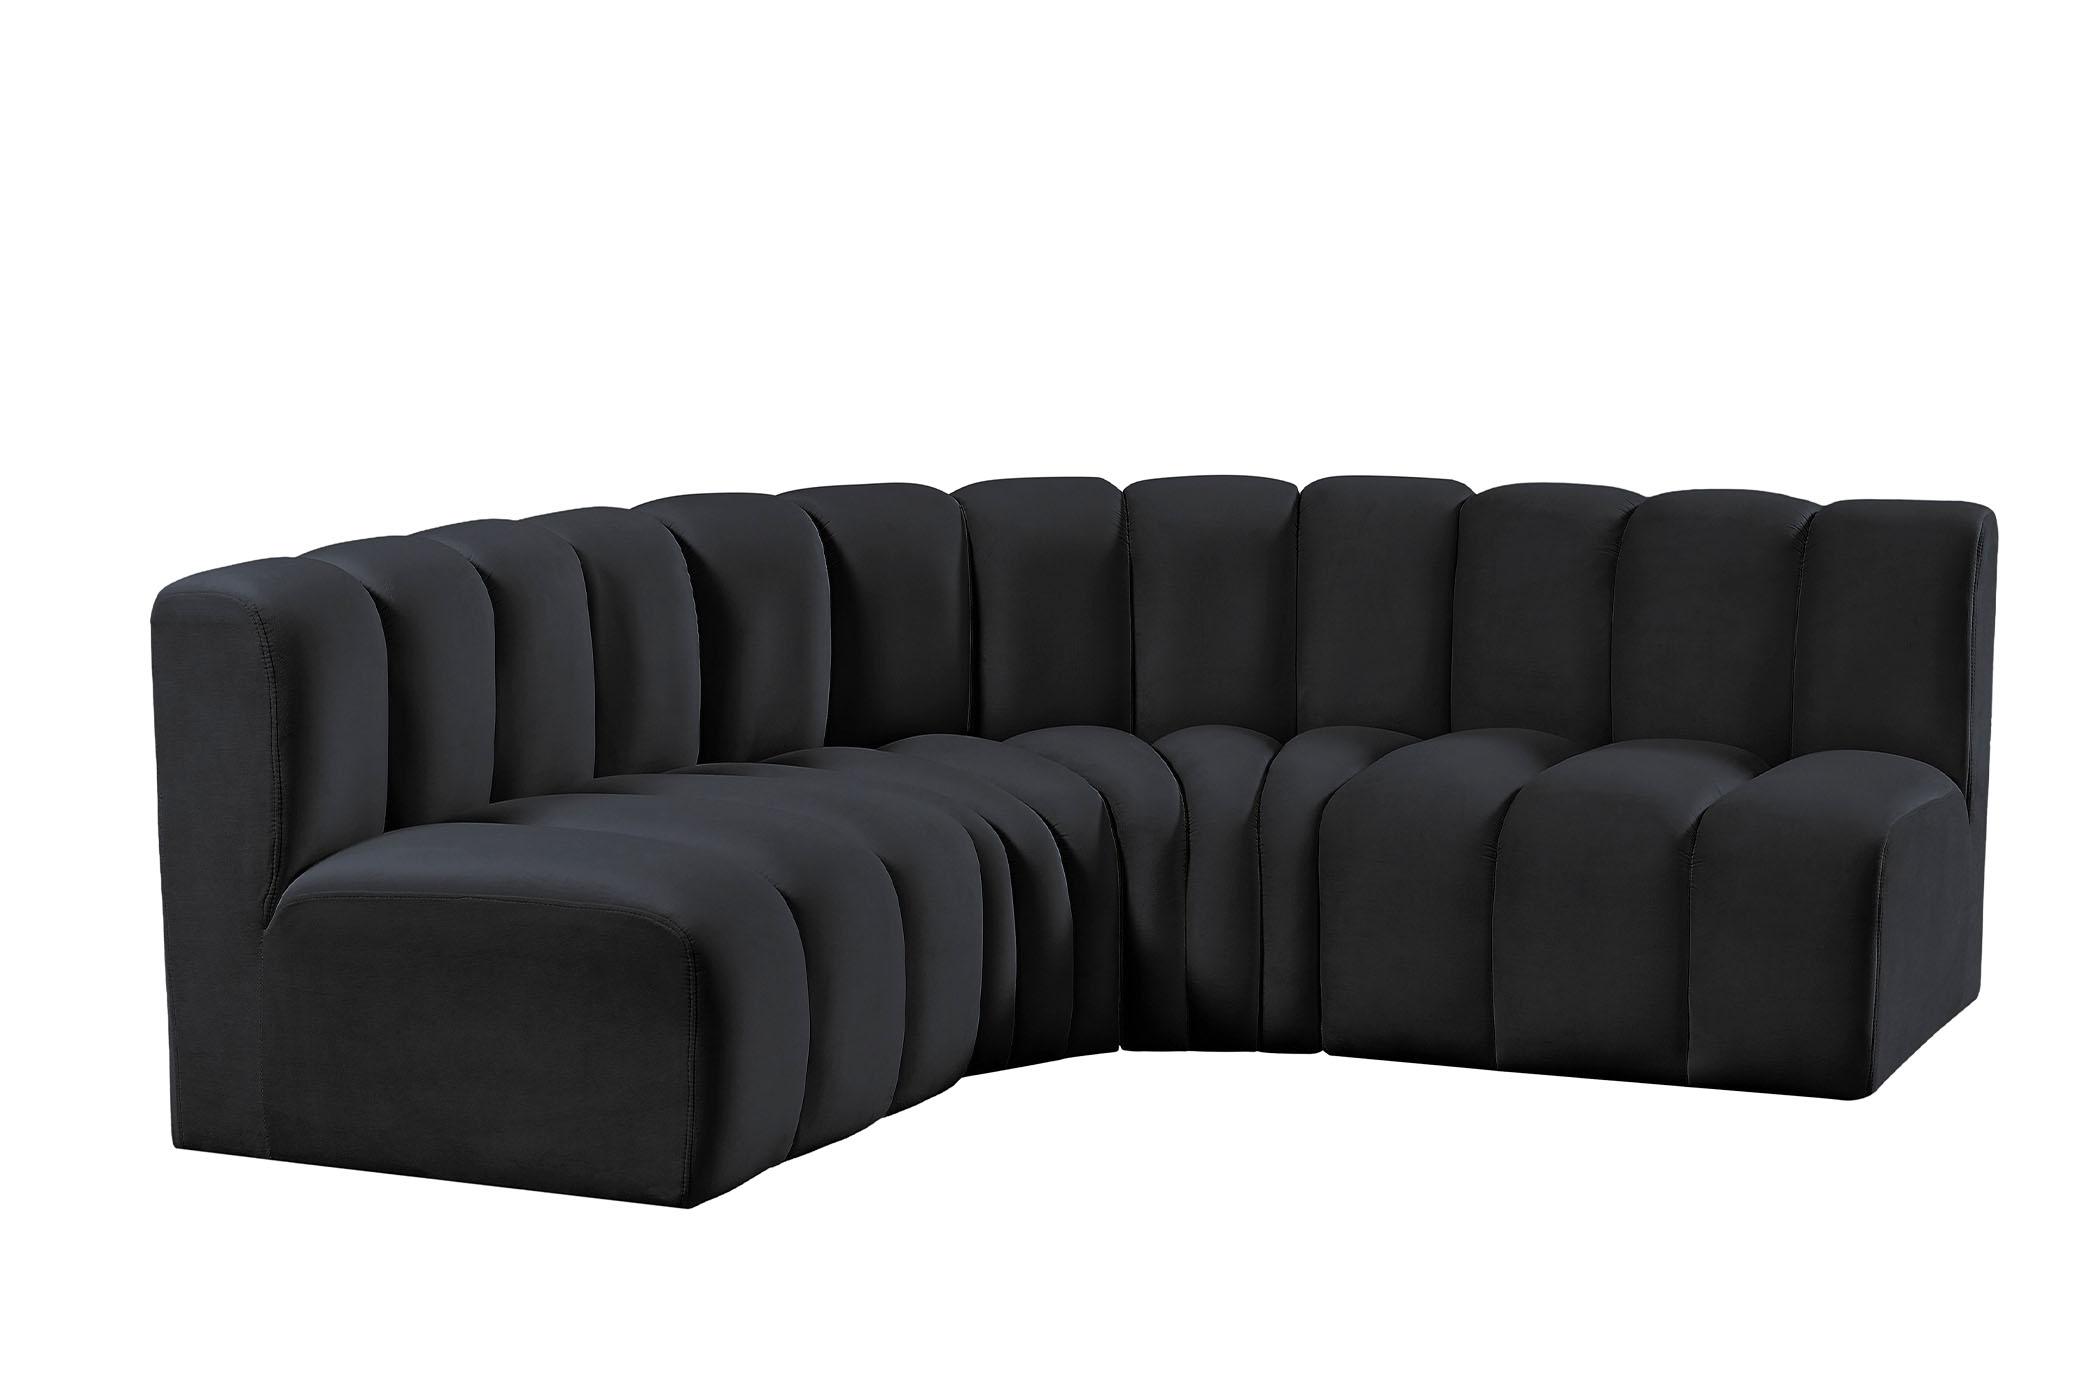 Contemporary, Modern Modular Sectional Sofa ARC 103Black-S4B 103Black-S4B in Black Velvet